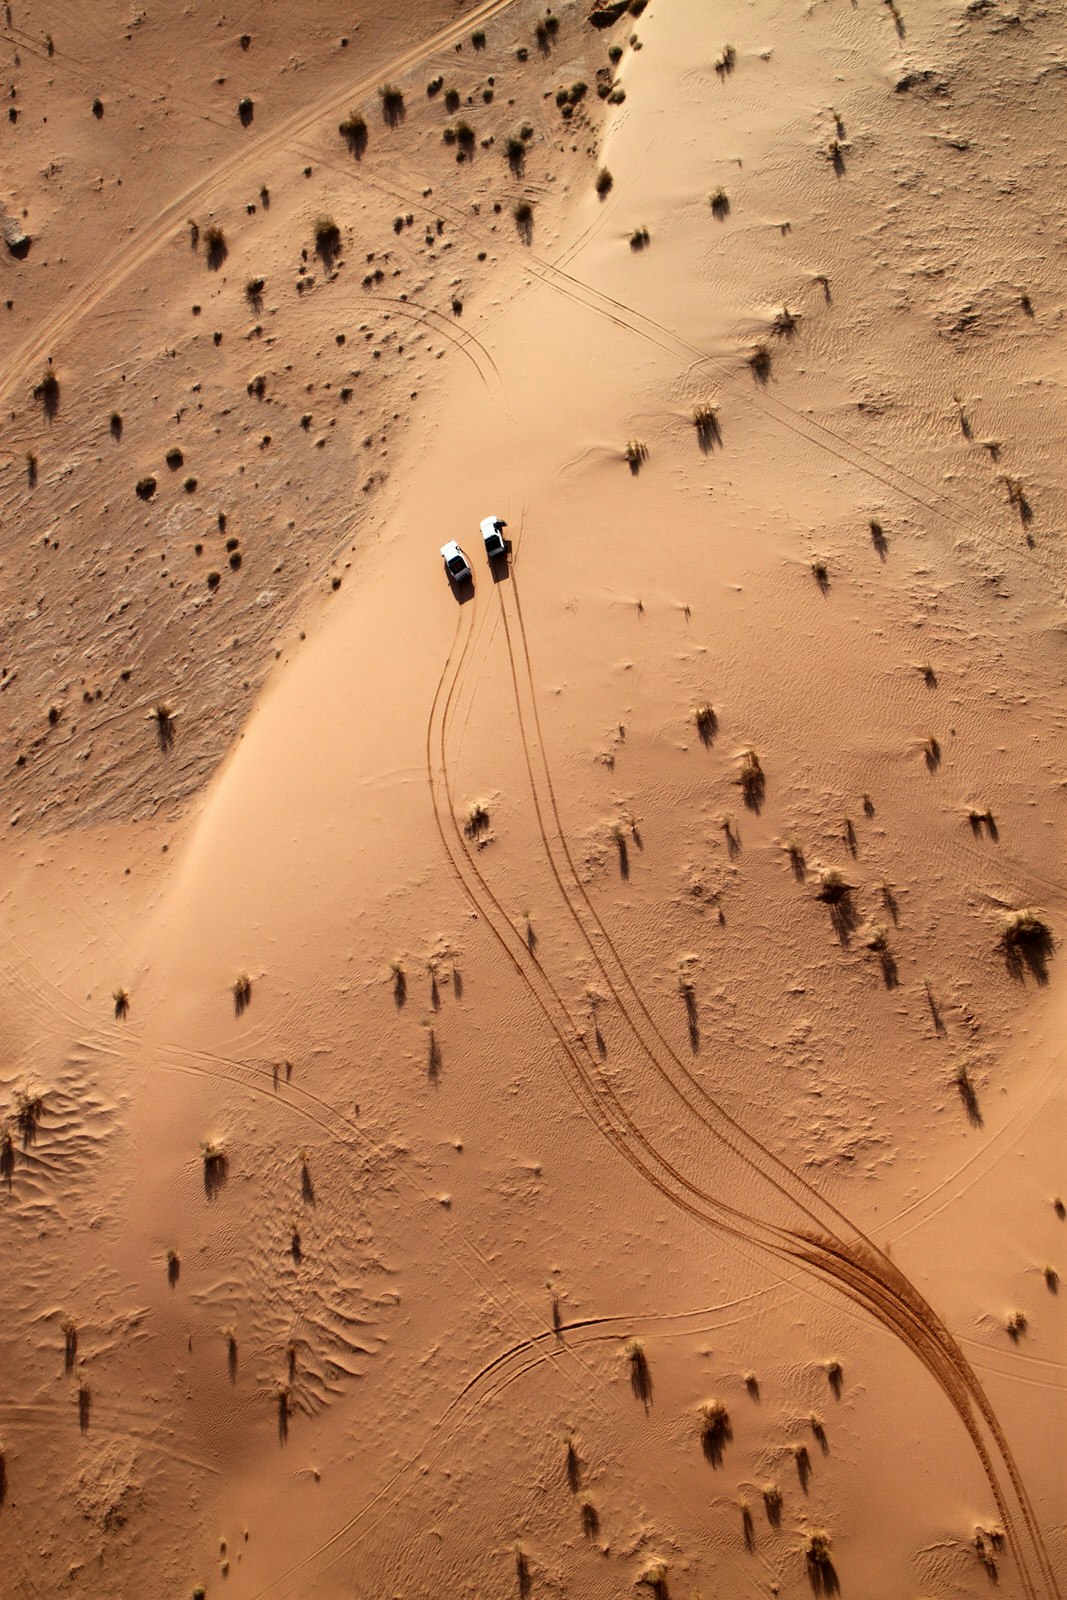 Wadi Rum desert view from a hot air balloon, Jordan © Claudia Fernandes / Shutterstock